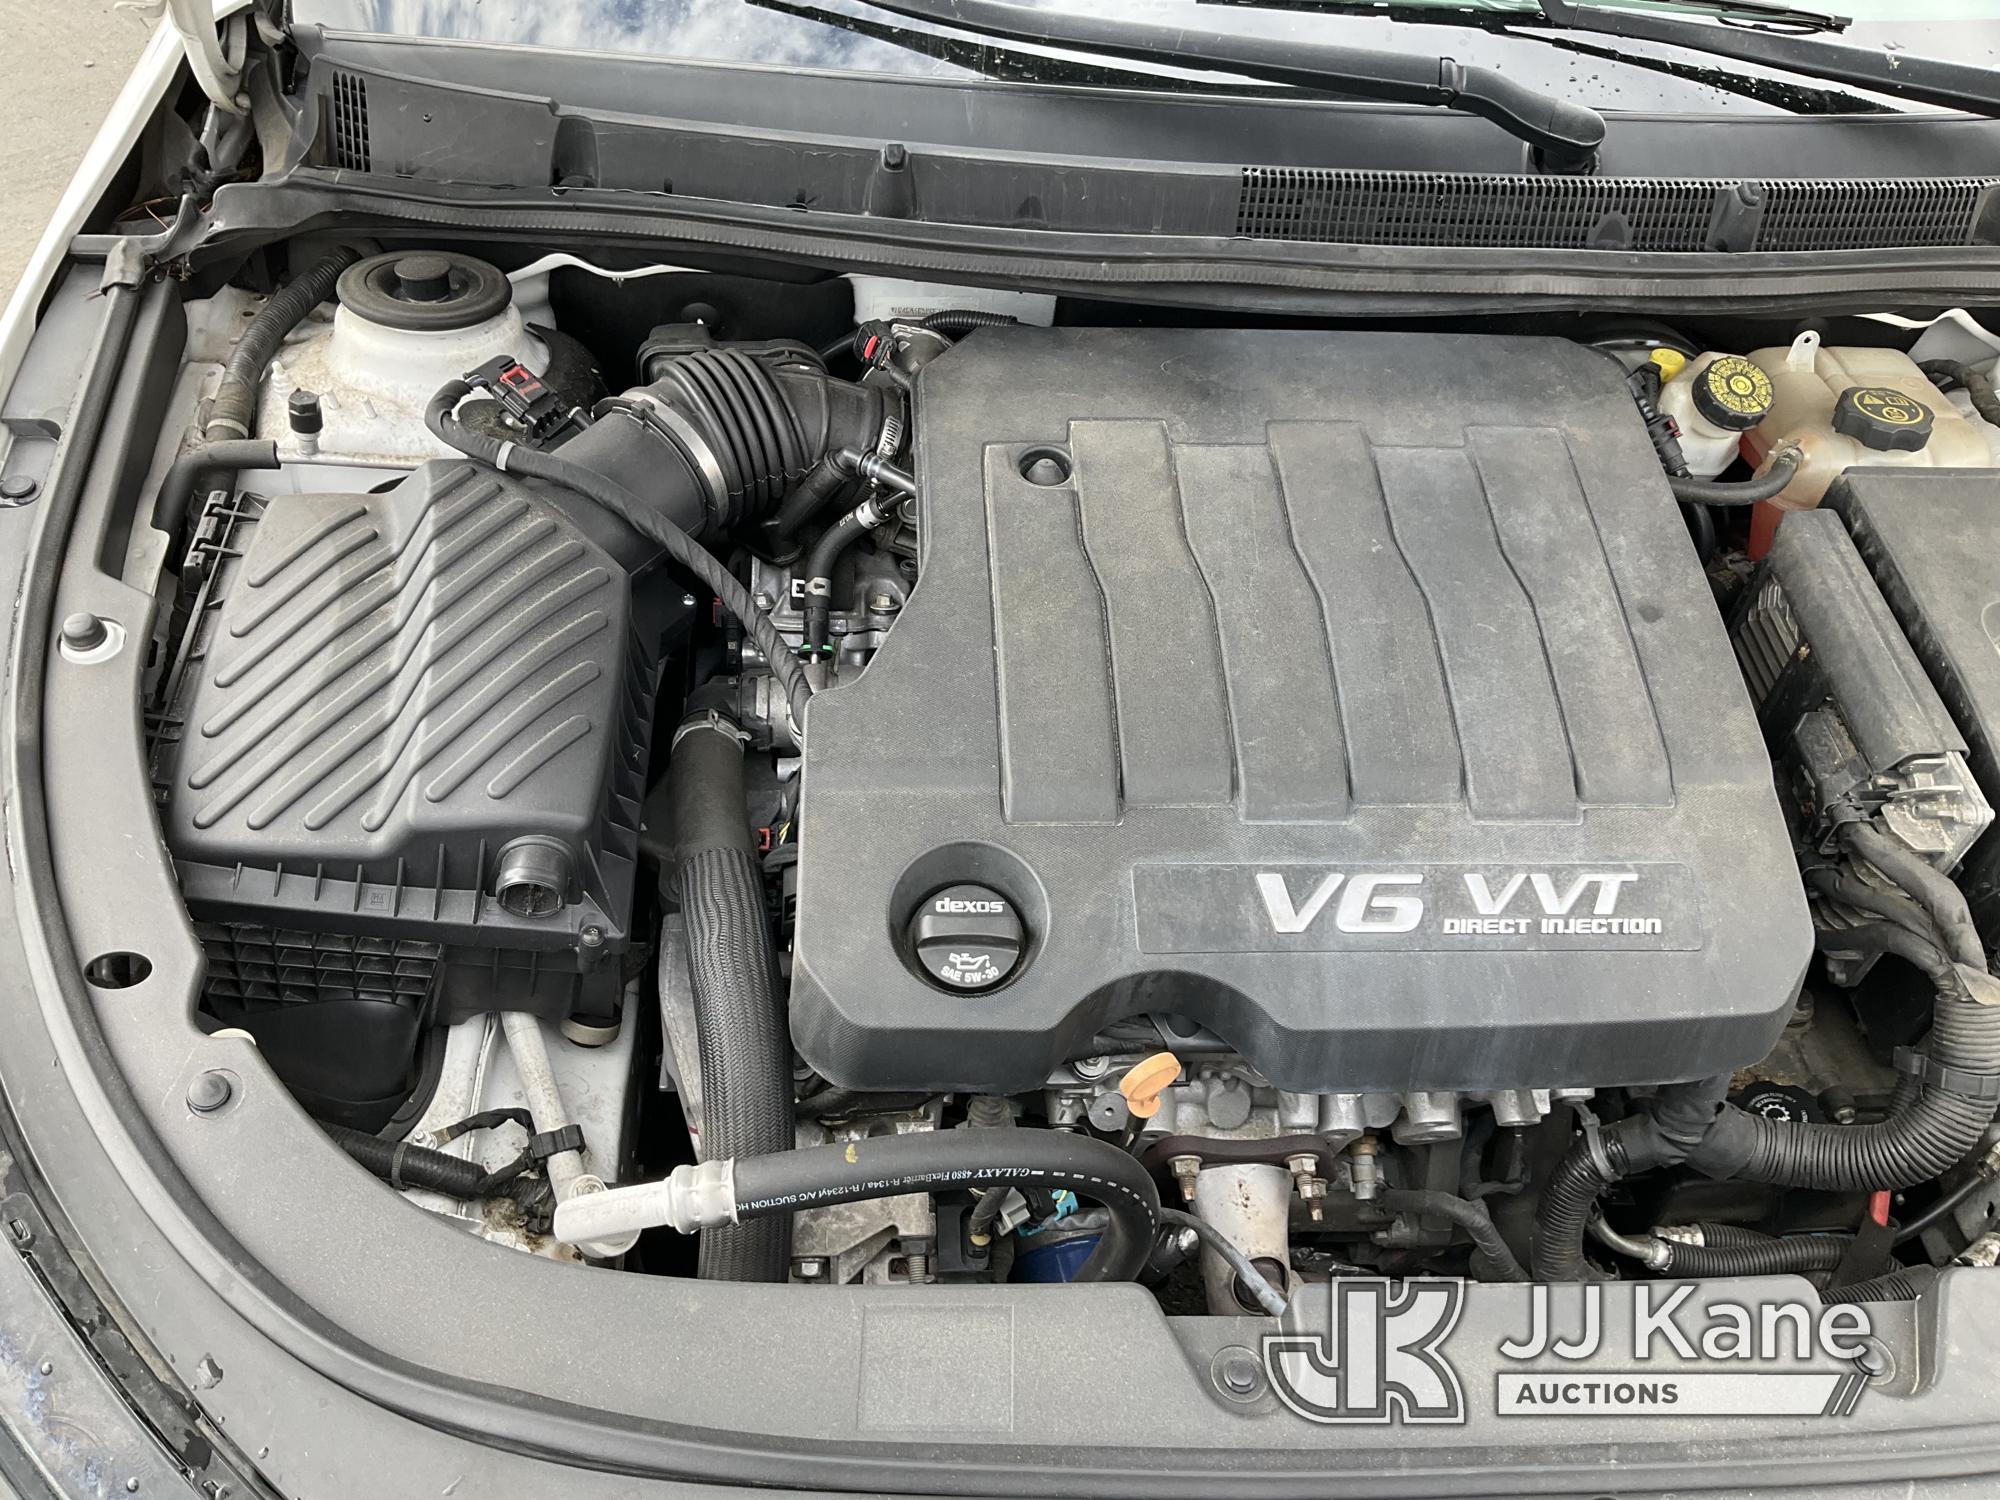 (Jurupa Valley, CA) 2016 Buick LaCrosse 4-Door Sedan Runs & Moves, Has Check Engine Light